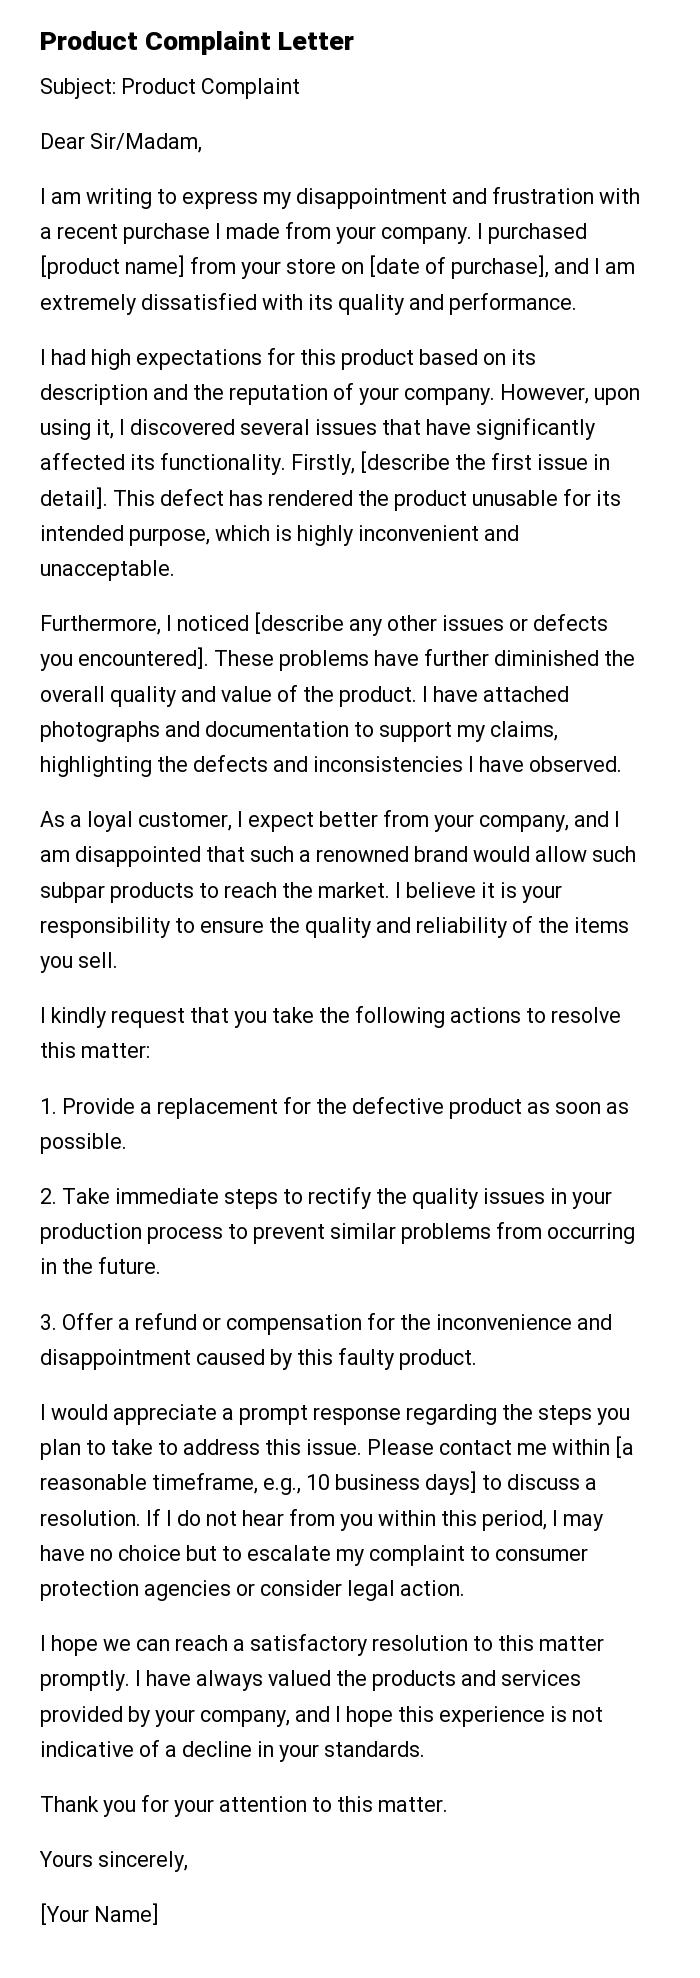 Product Complaint Letter